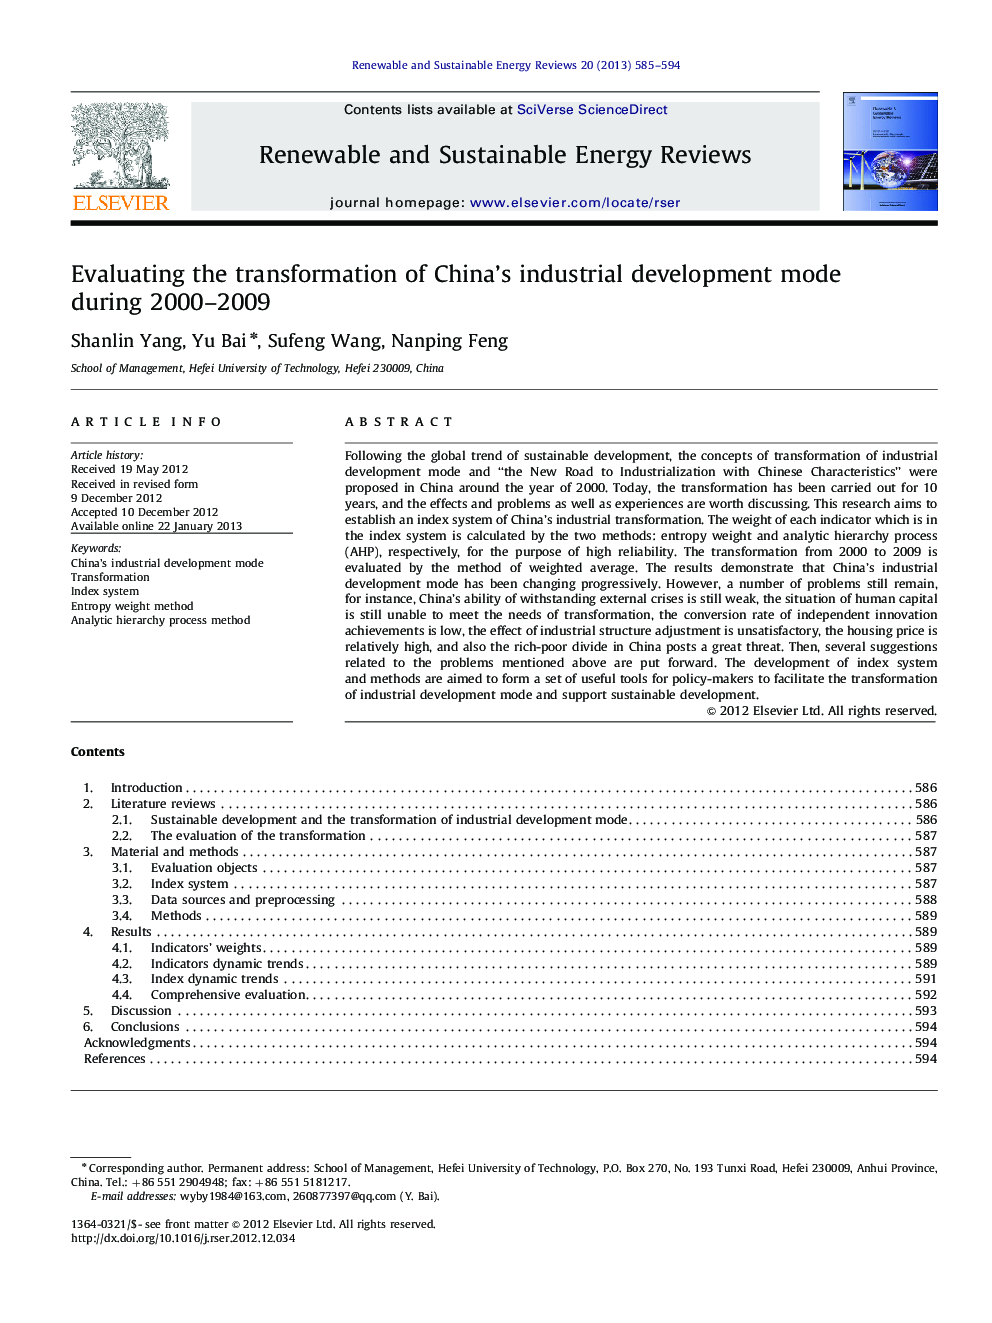 ارزیابی تحول حالت توسعه صنعتی چین طی 2000-2009 